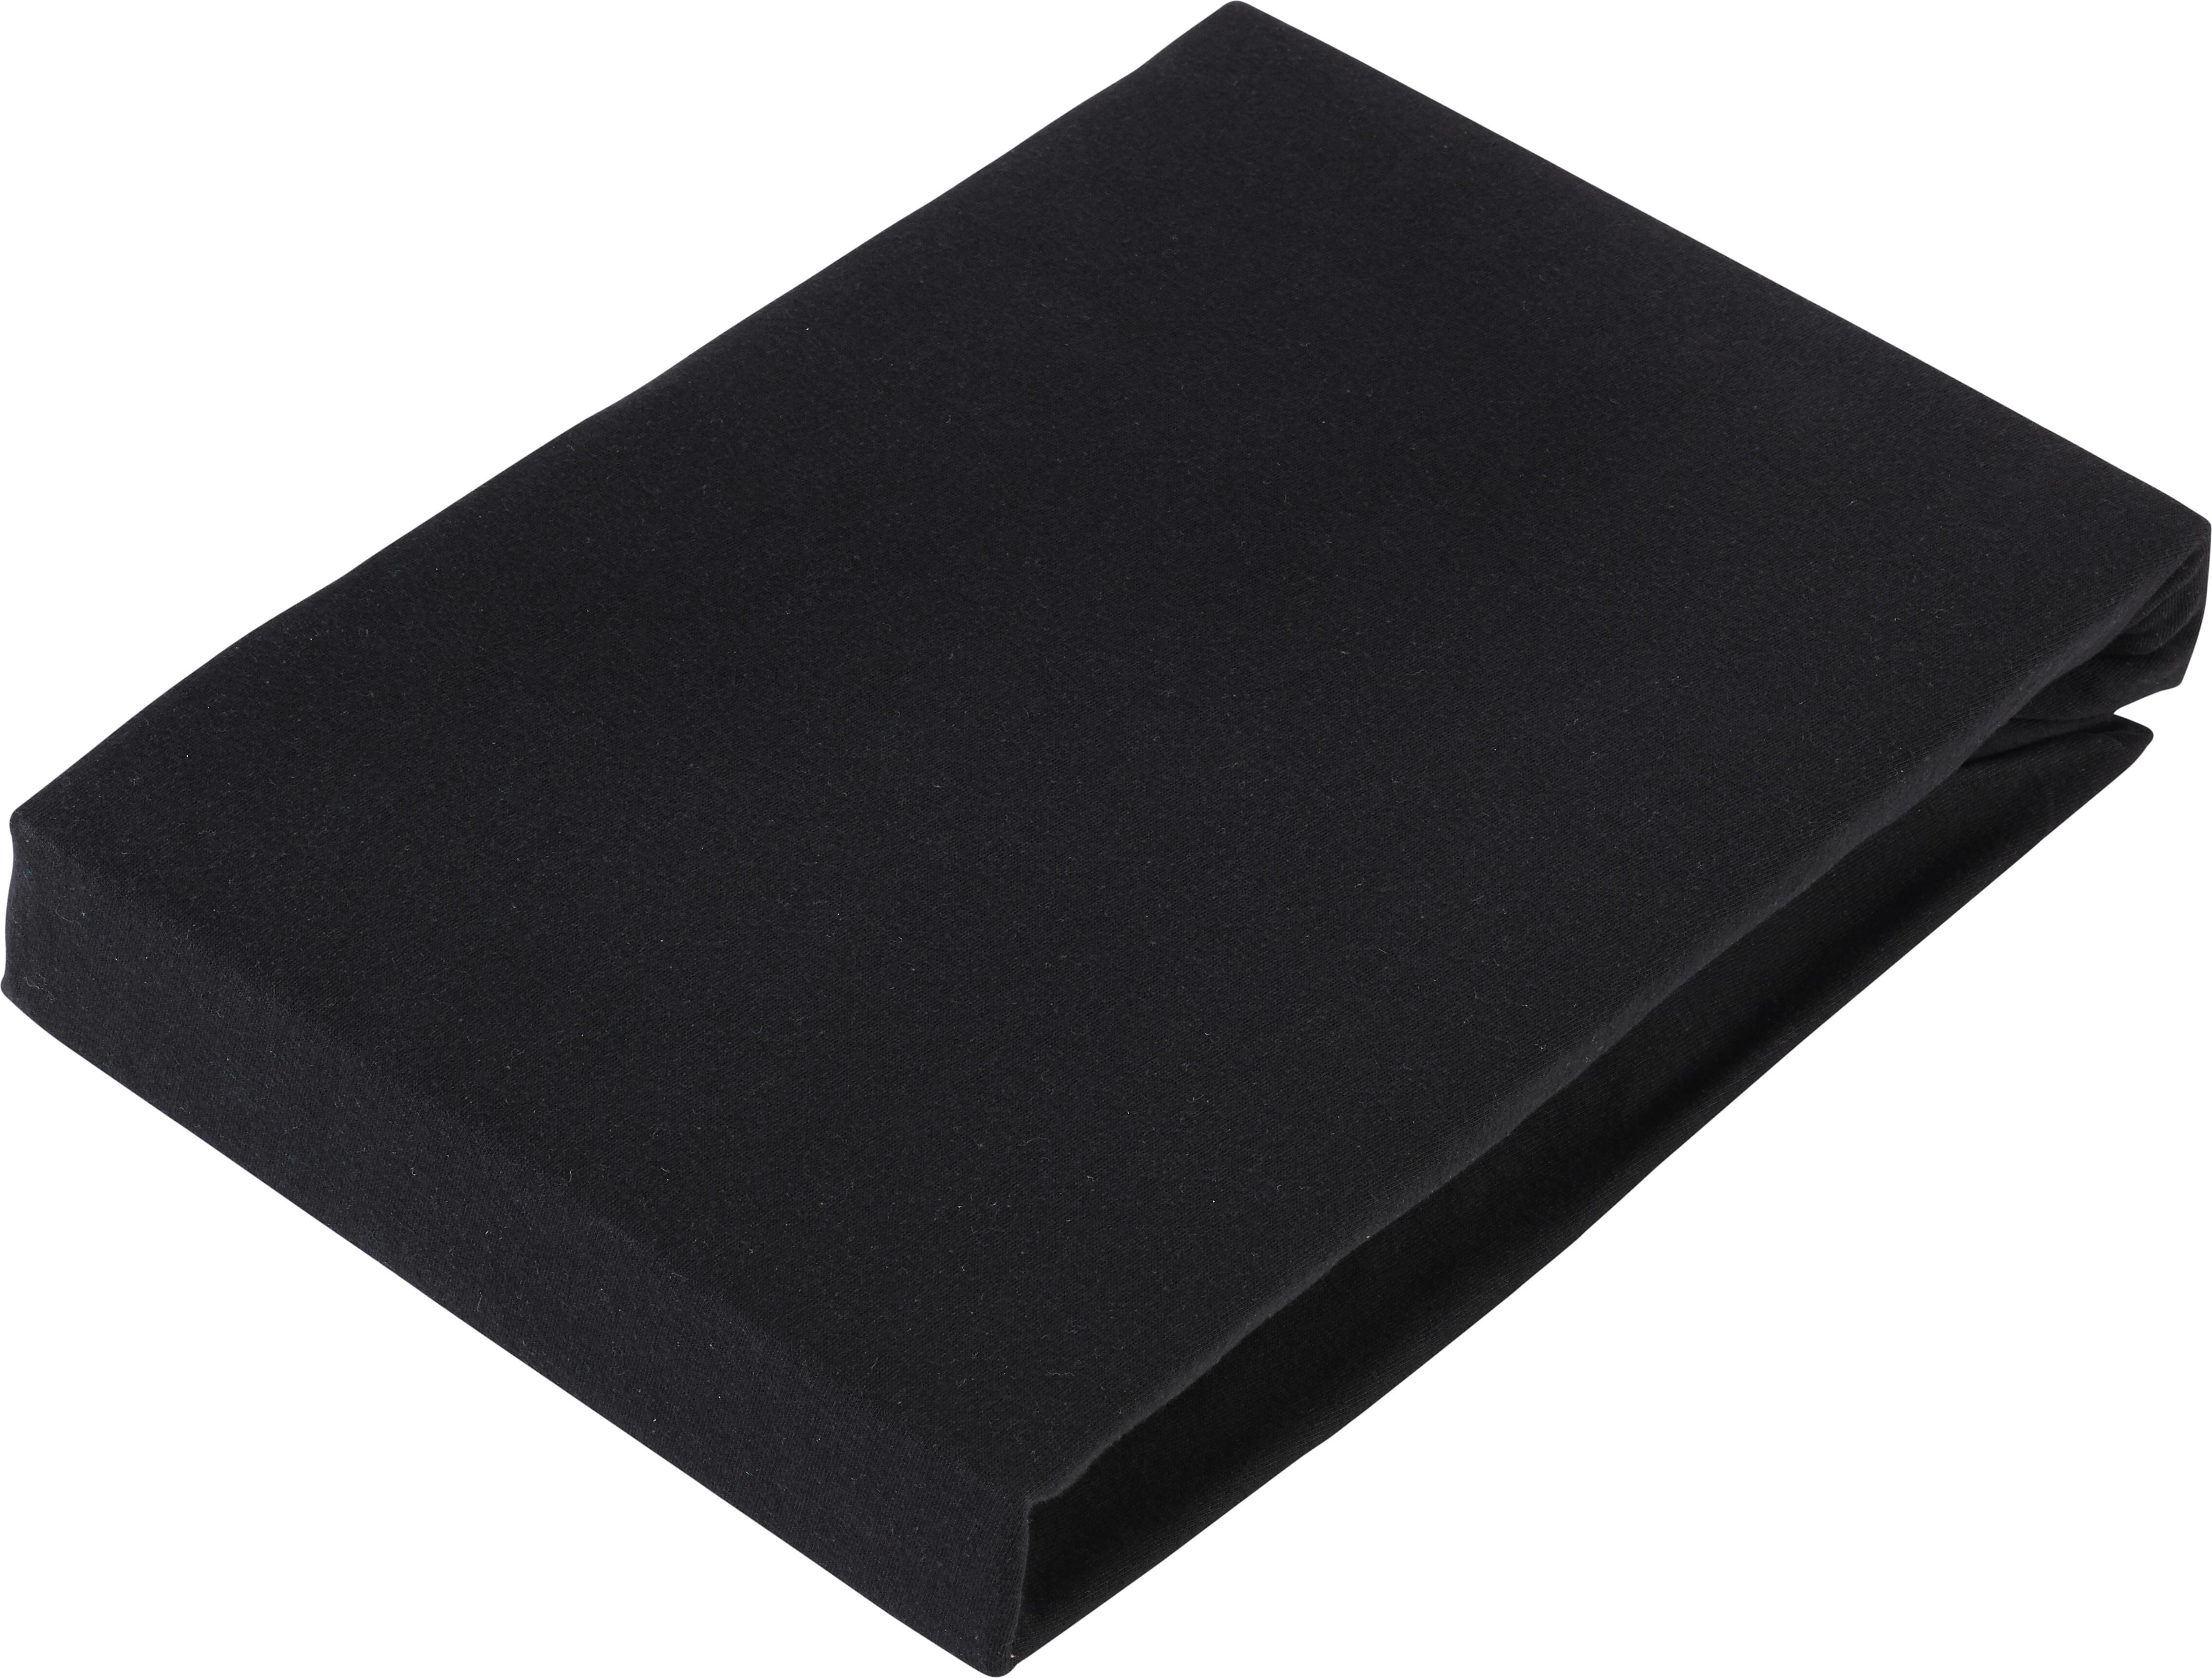 Elastické Prostěradlo Basic, 180/200cm, Černá - černá, textil (180/200cm) - Modern Living